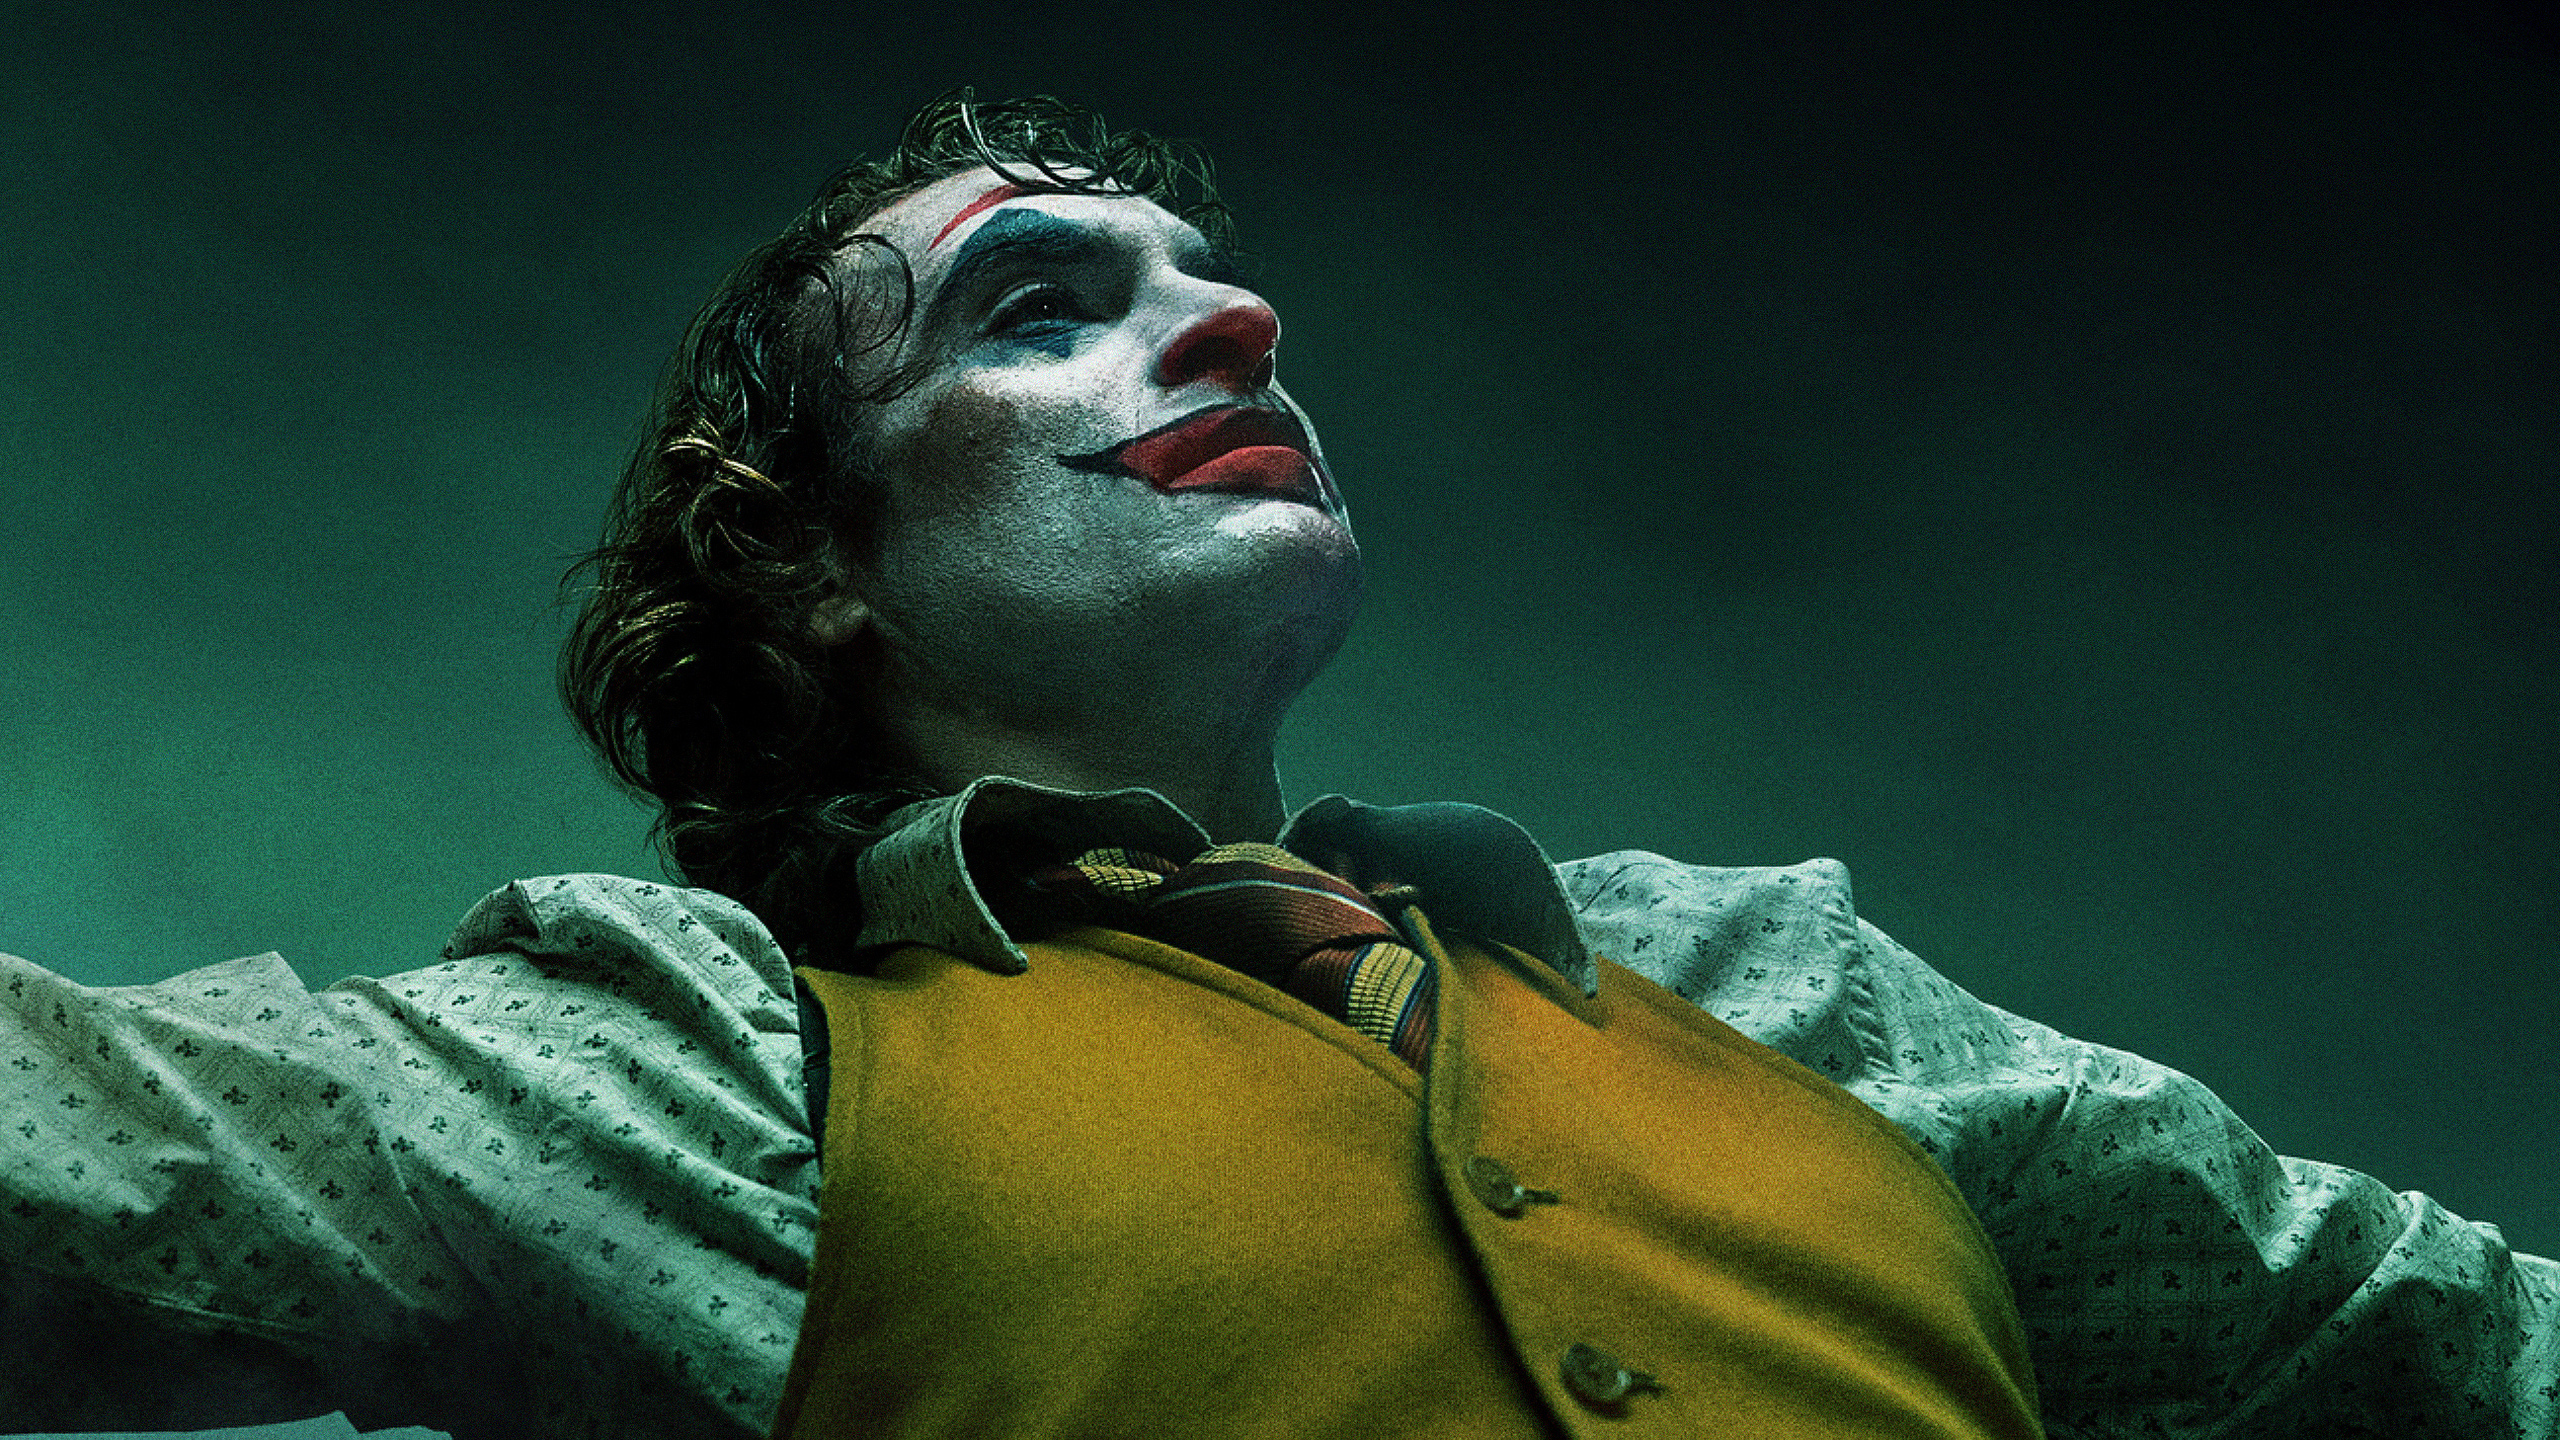 2019 Joker Joaquin Phoenix In 2560x1440 Resolution. 